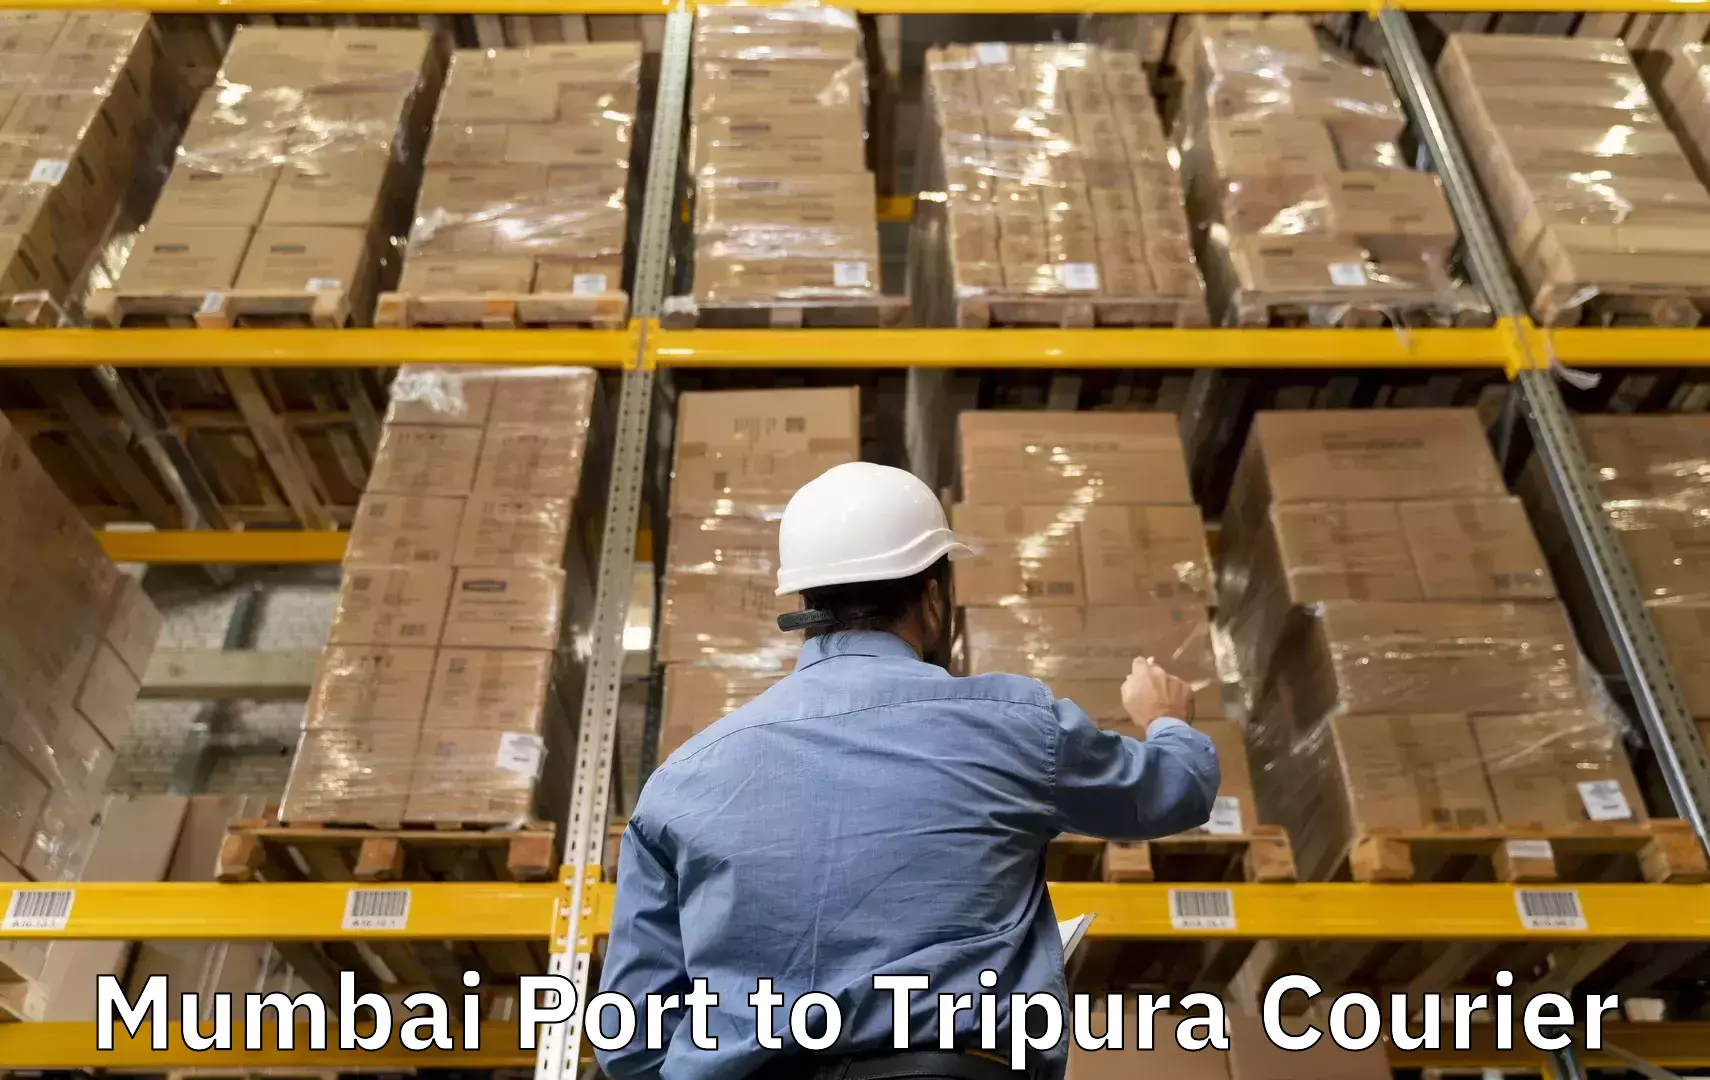 Luggage delivery optimization Mumbai Port to Udaipur Tripura